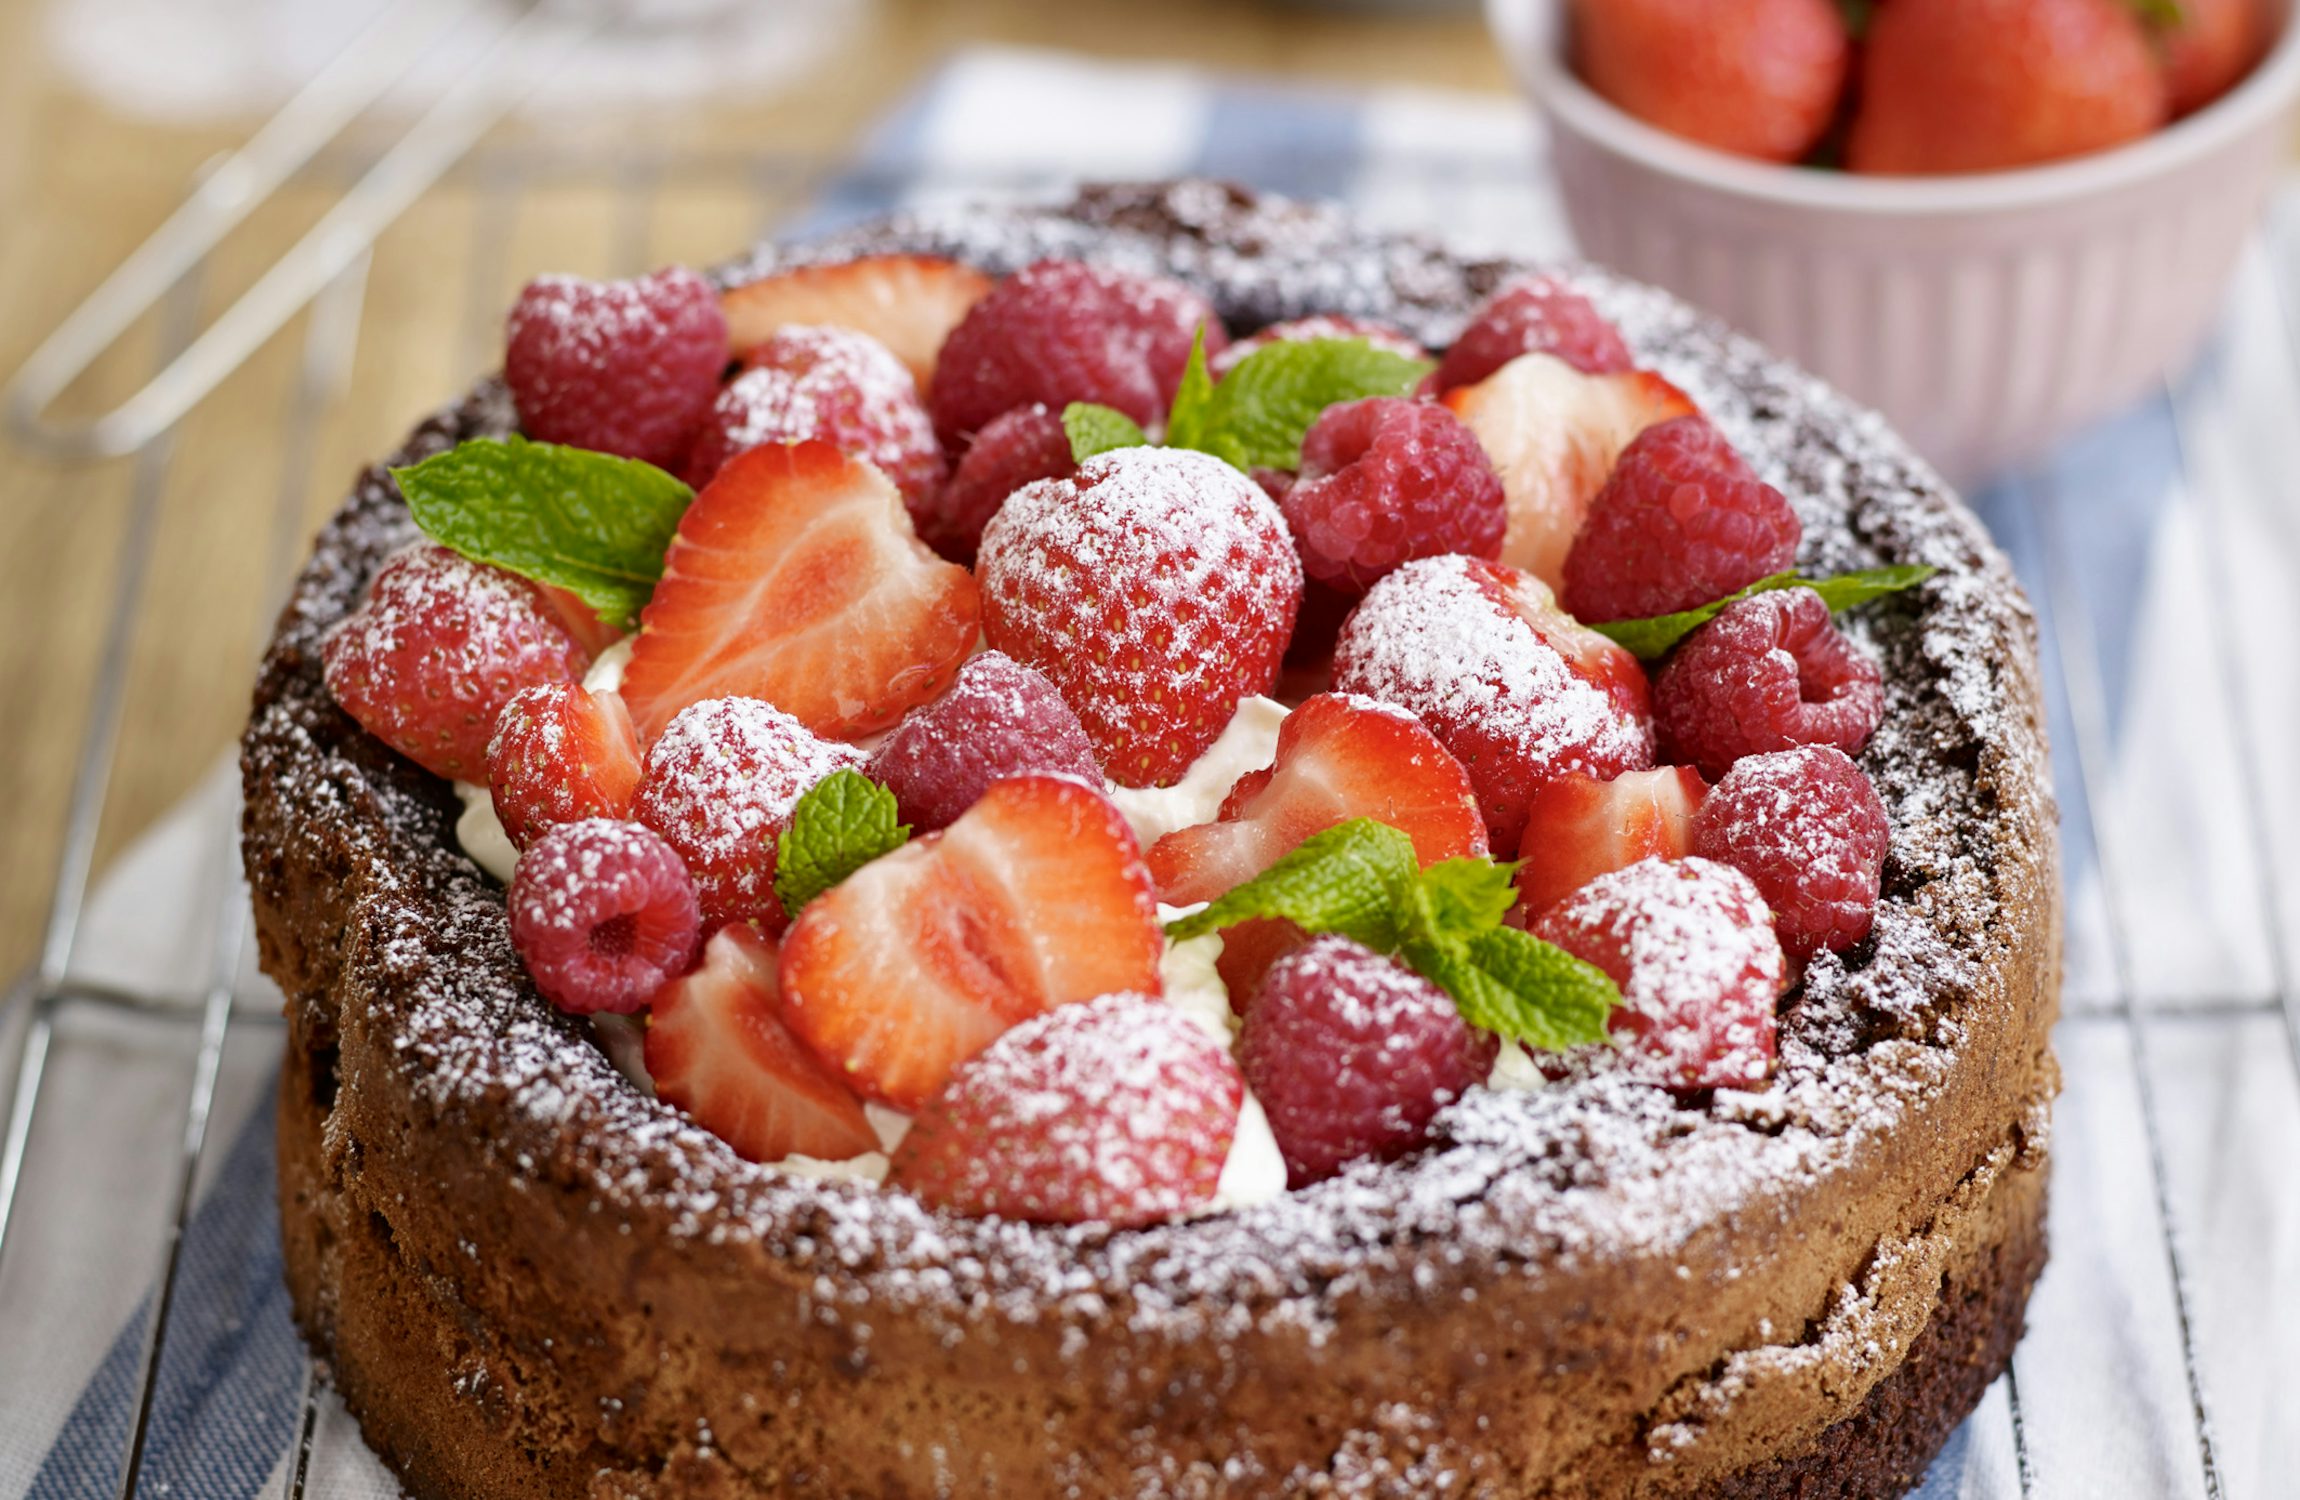 Gluten Free Chocolate Cake with Strawberries & Raspberries